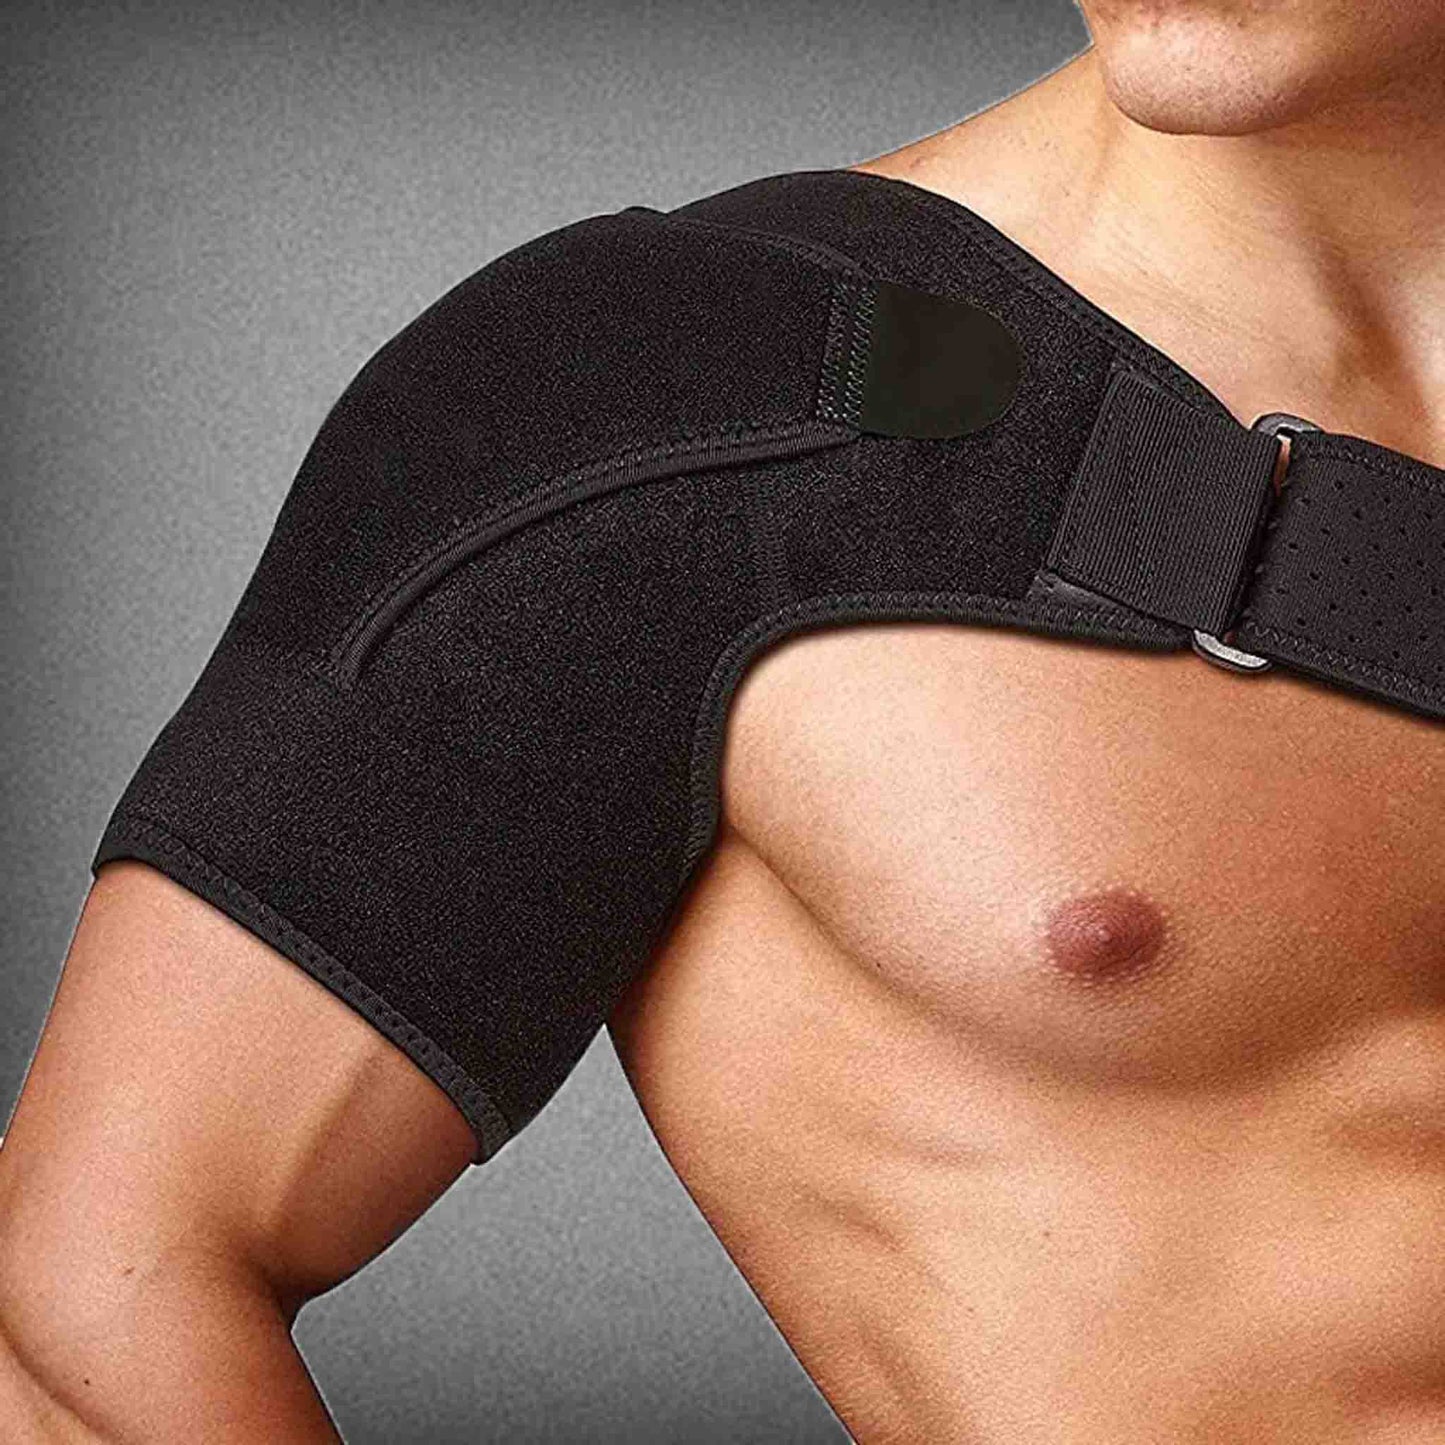 Adjustable Single Shoulder Support Brace Guard Strap for Men